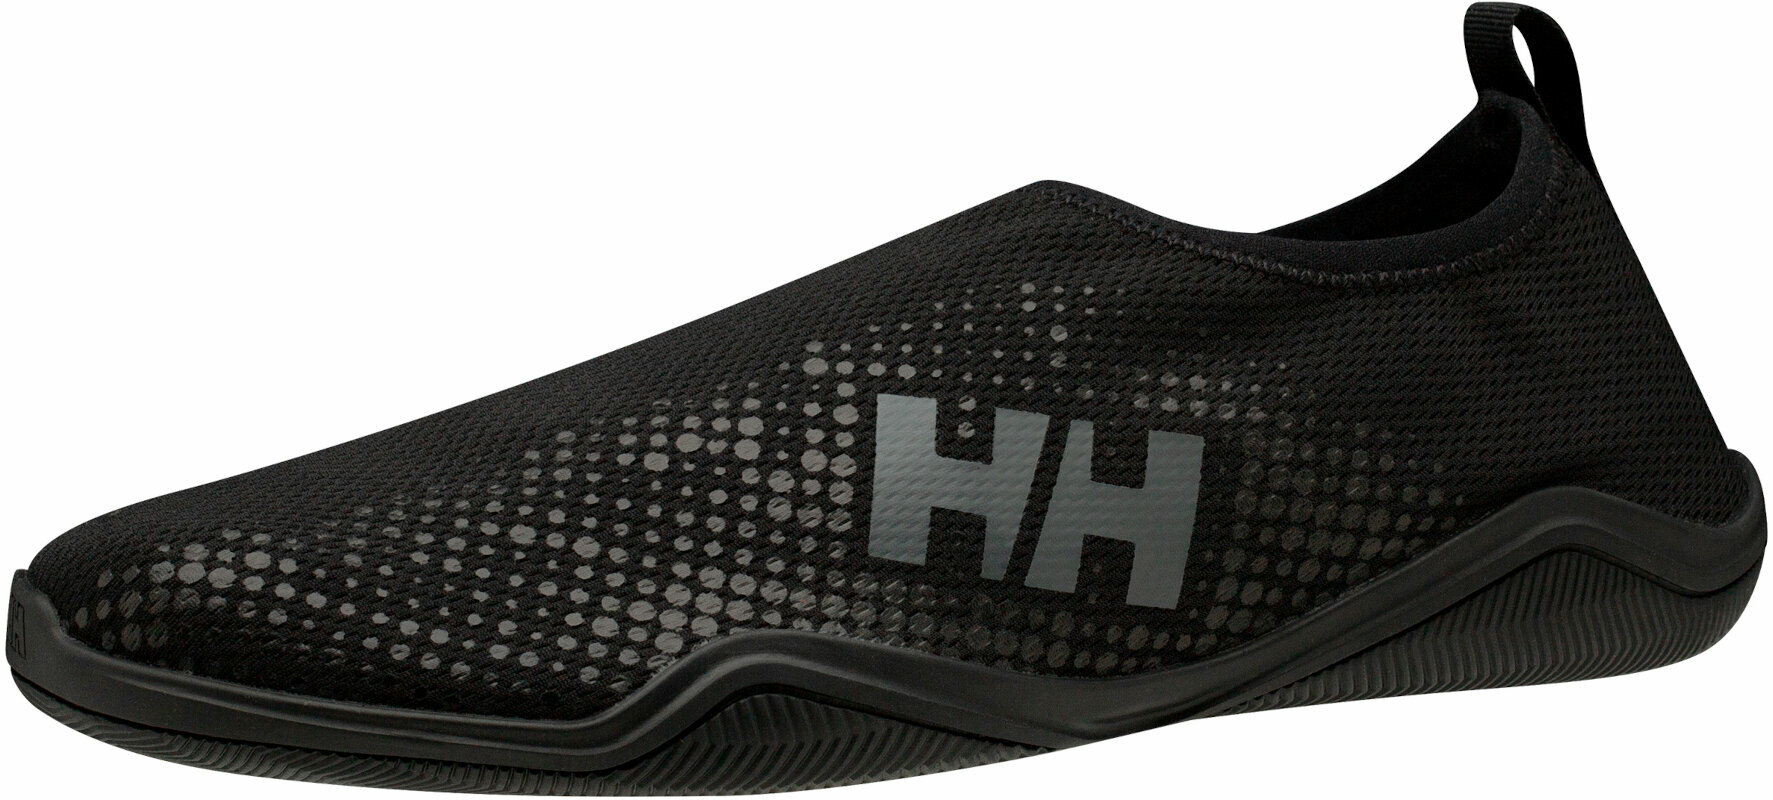 Pantofi de Navigatie Helly Hansen Men's Crest Watermoc Pantofi de Navigatie